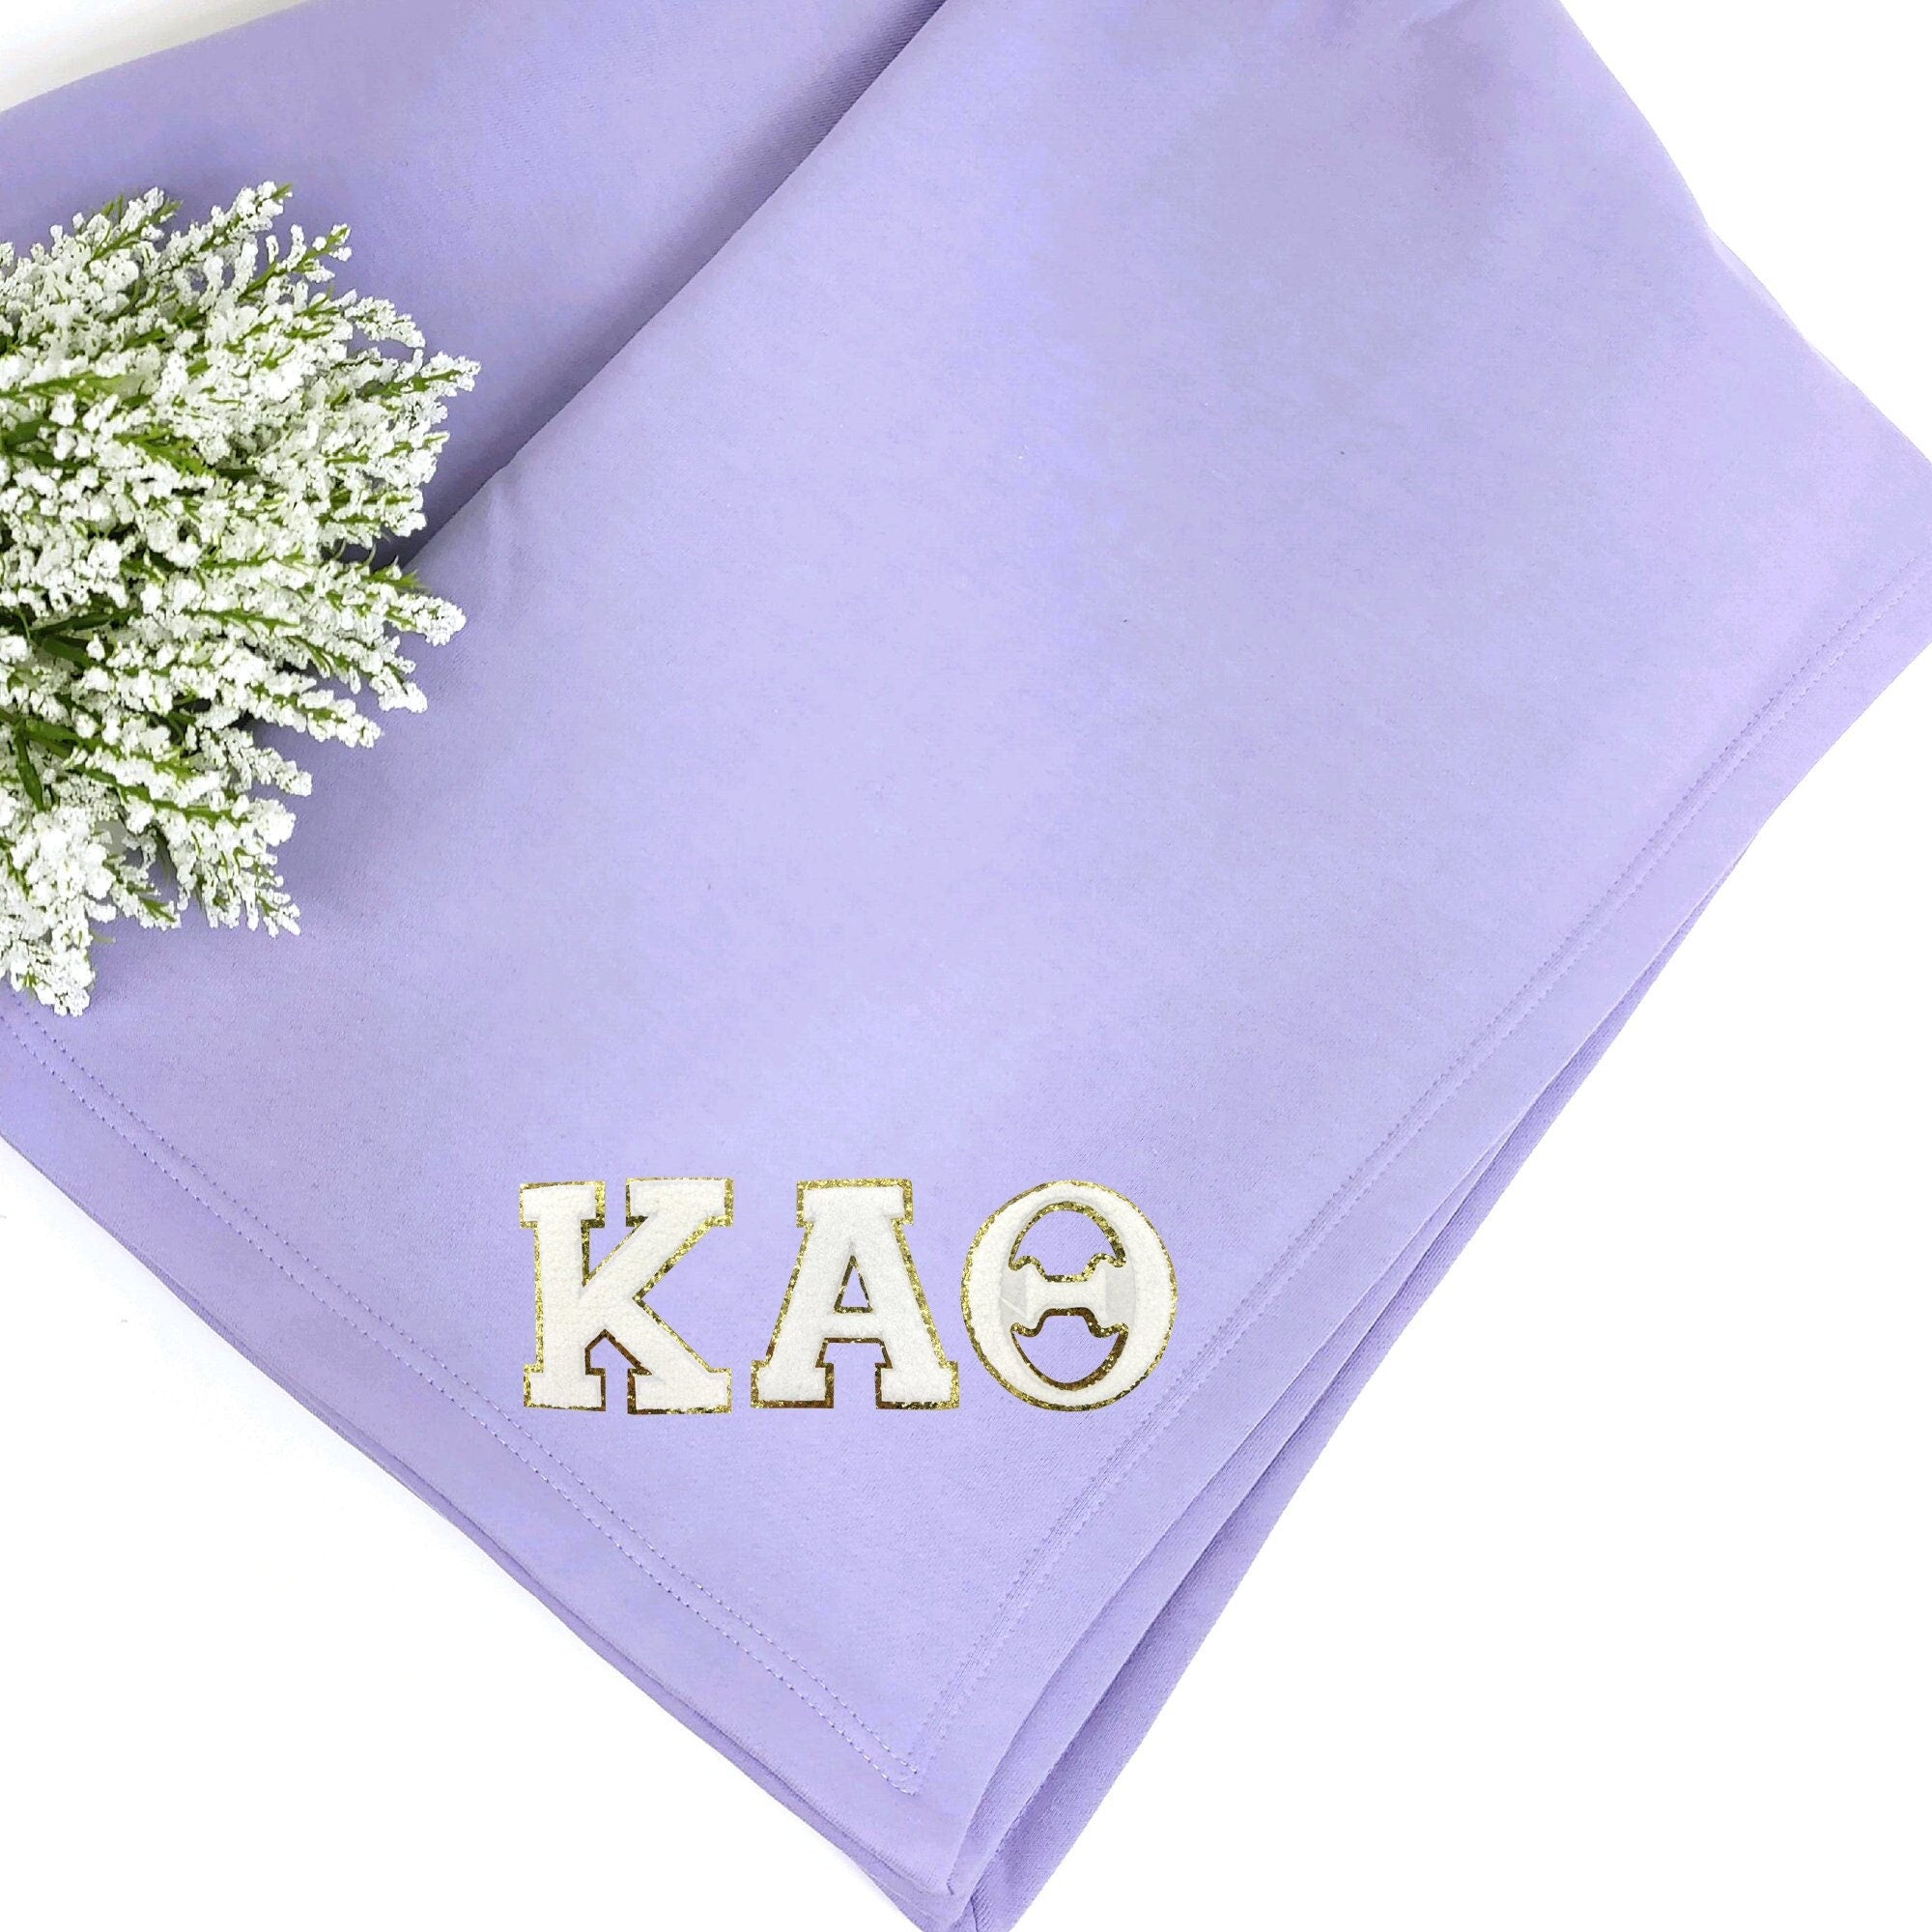 Kappa Alpha Theta Patch Sweatshirt Blanket, Sorority Gift, Warm and Soft